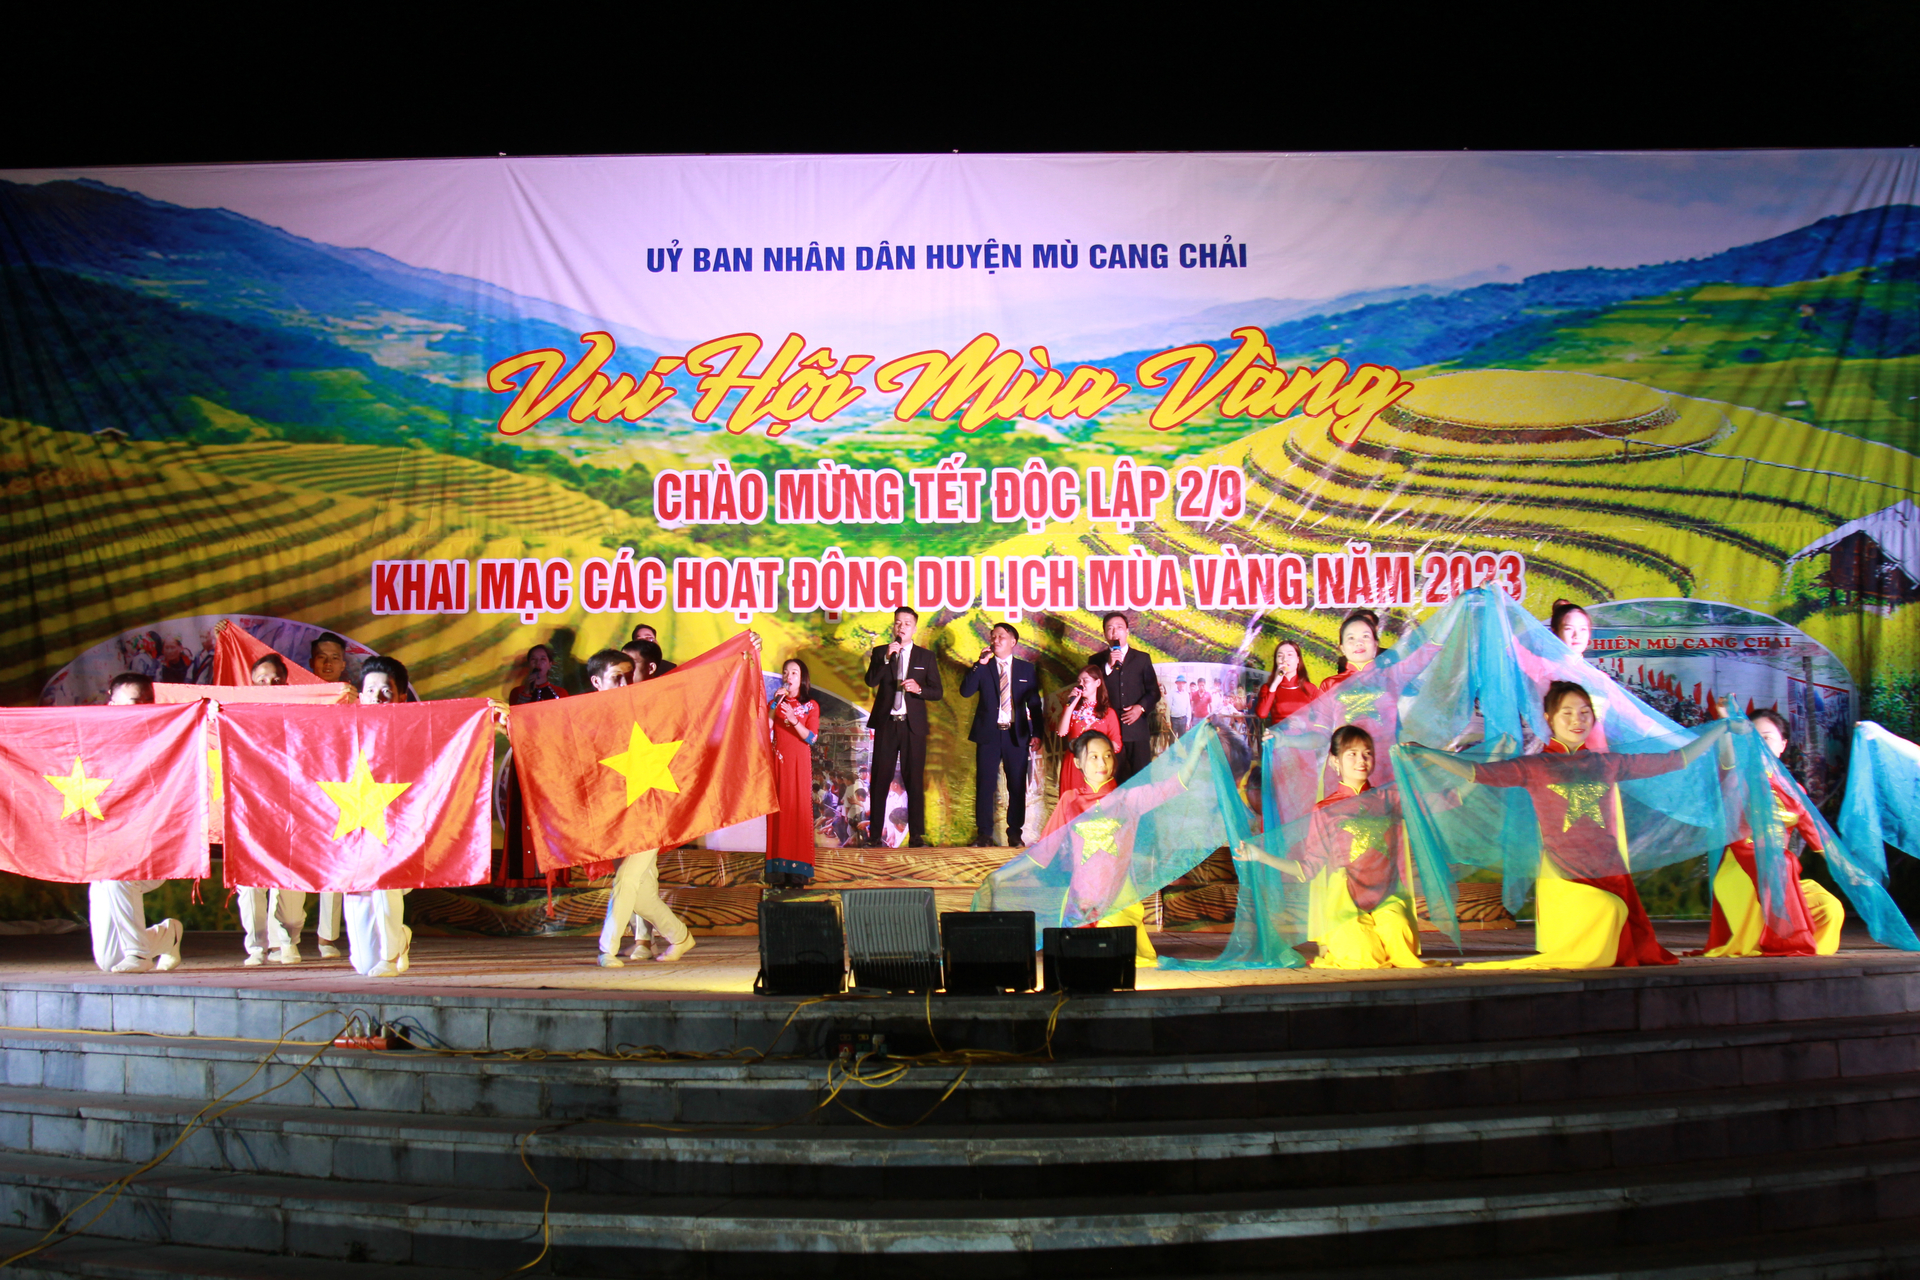 Tết Độc lập ở huyện Mù Cang Chải được tổ chức với nhiều hoạt động văn hóa, văn nghệ đặc sắc. Ảnh: Thanh Tiến.